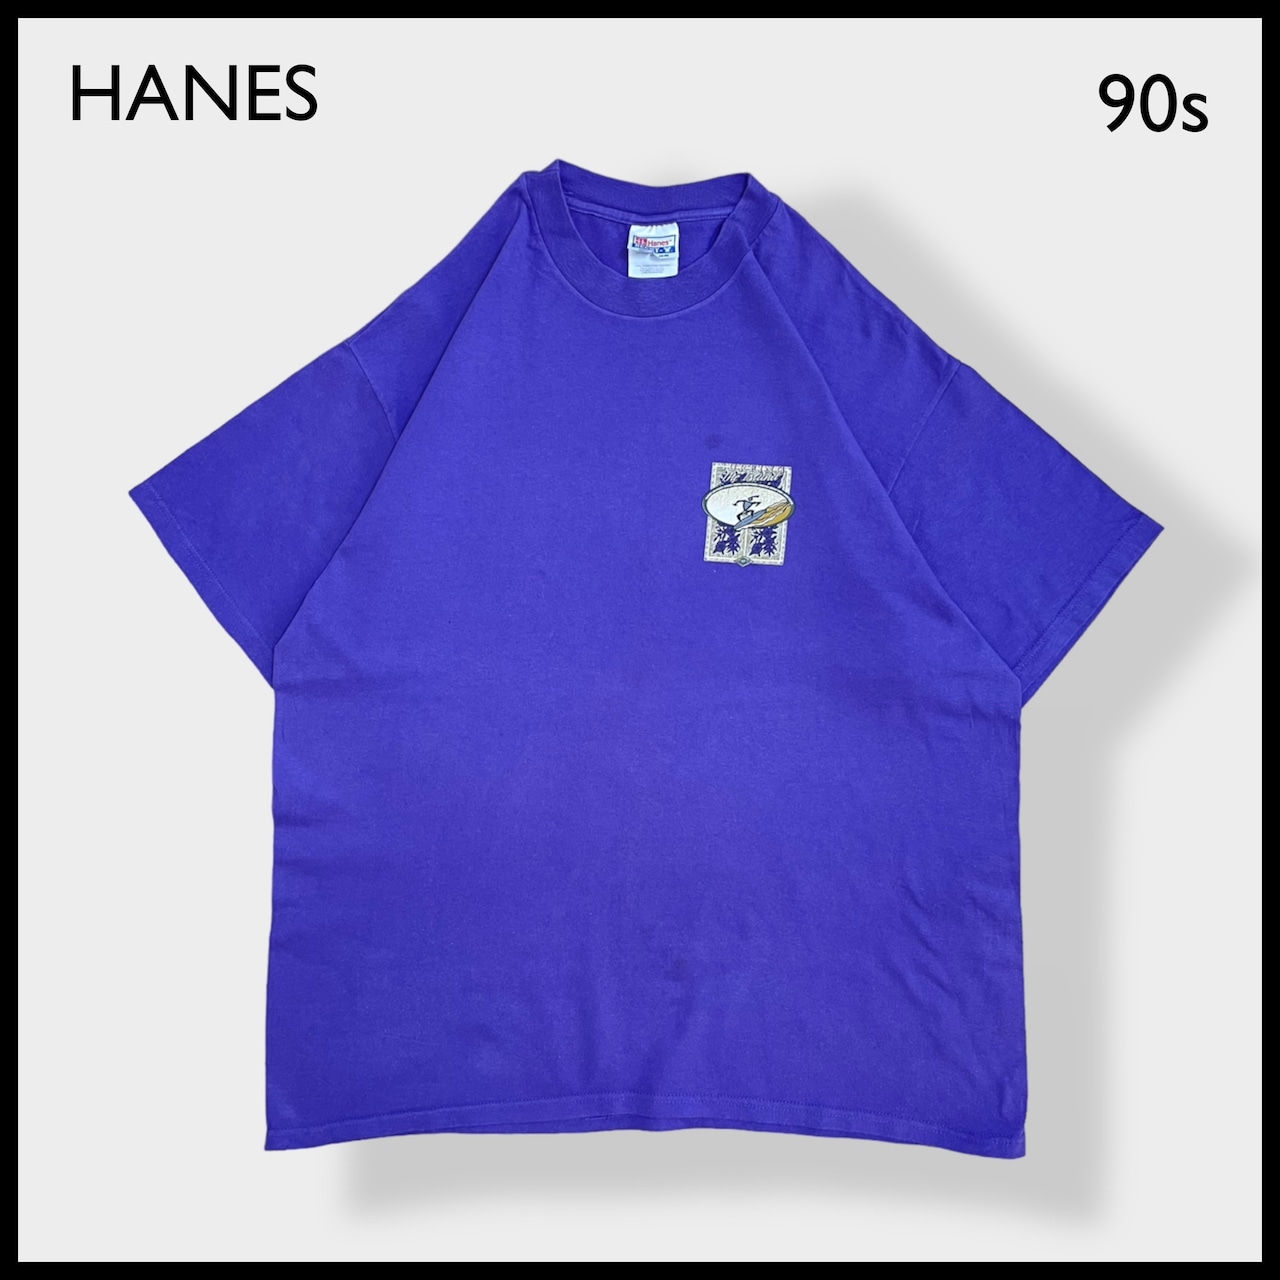 【HANES】90s USA製 X-LARGE ワンポイントロゴ Tシャツ バックプリント ハワイ サーフィン デザイン イラスト ヘインズ パープル 半袖  US古着